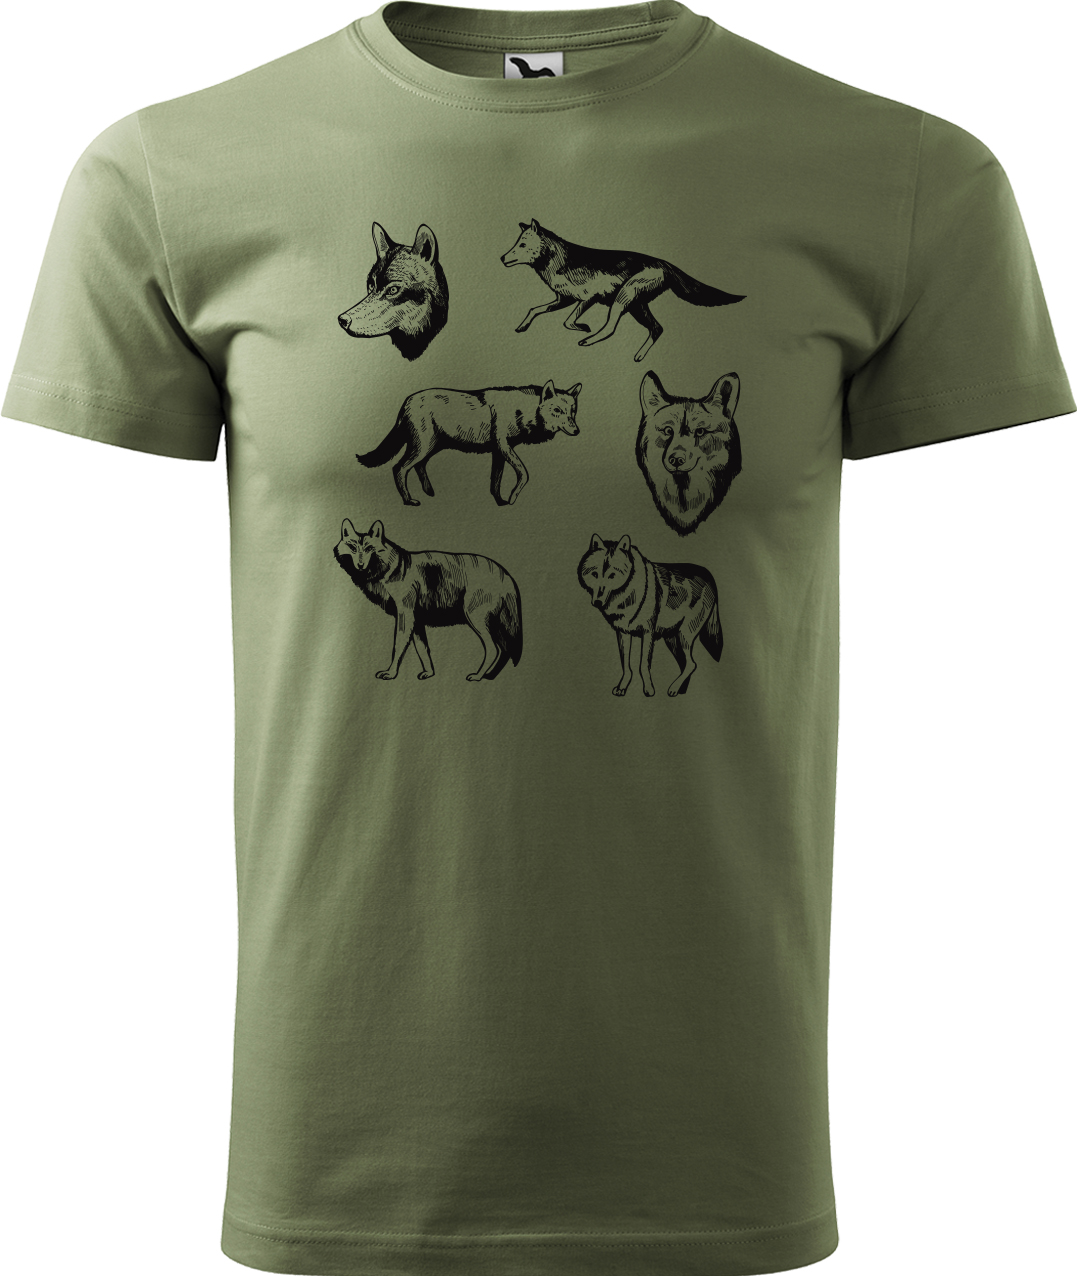 Pánské tričko s vlkem - Vlci Velikost: 4XL, Barva: Světlá khaki (28), Střih: pánský